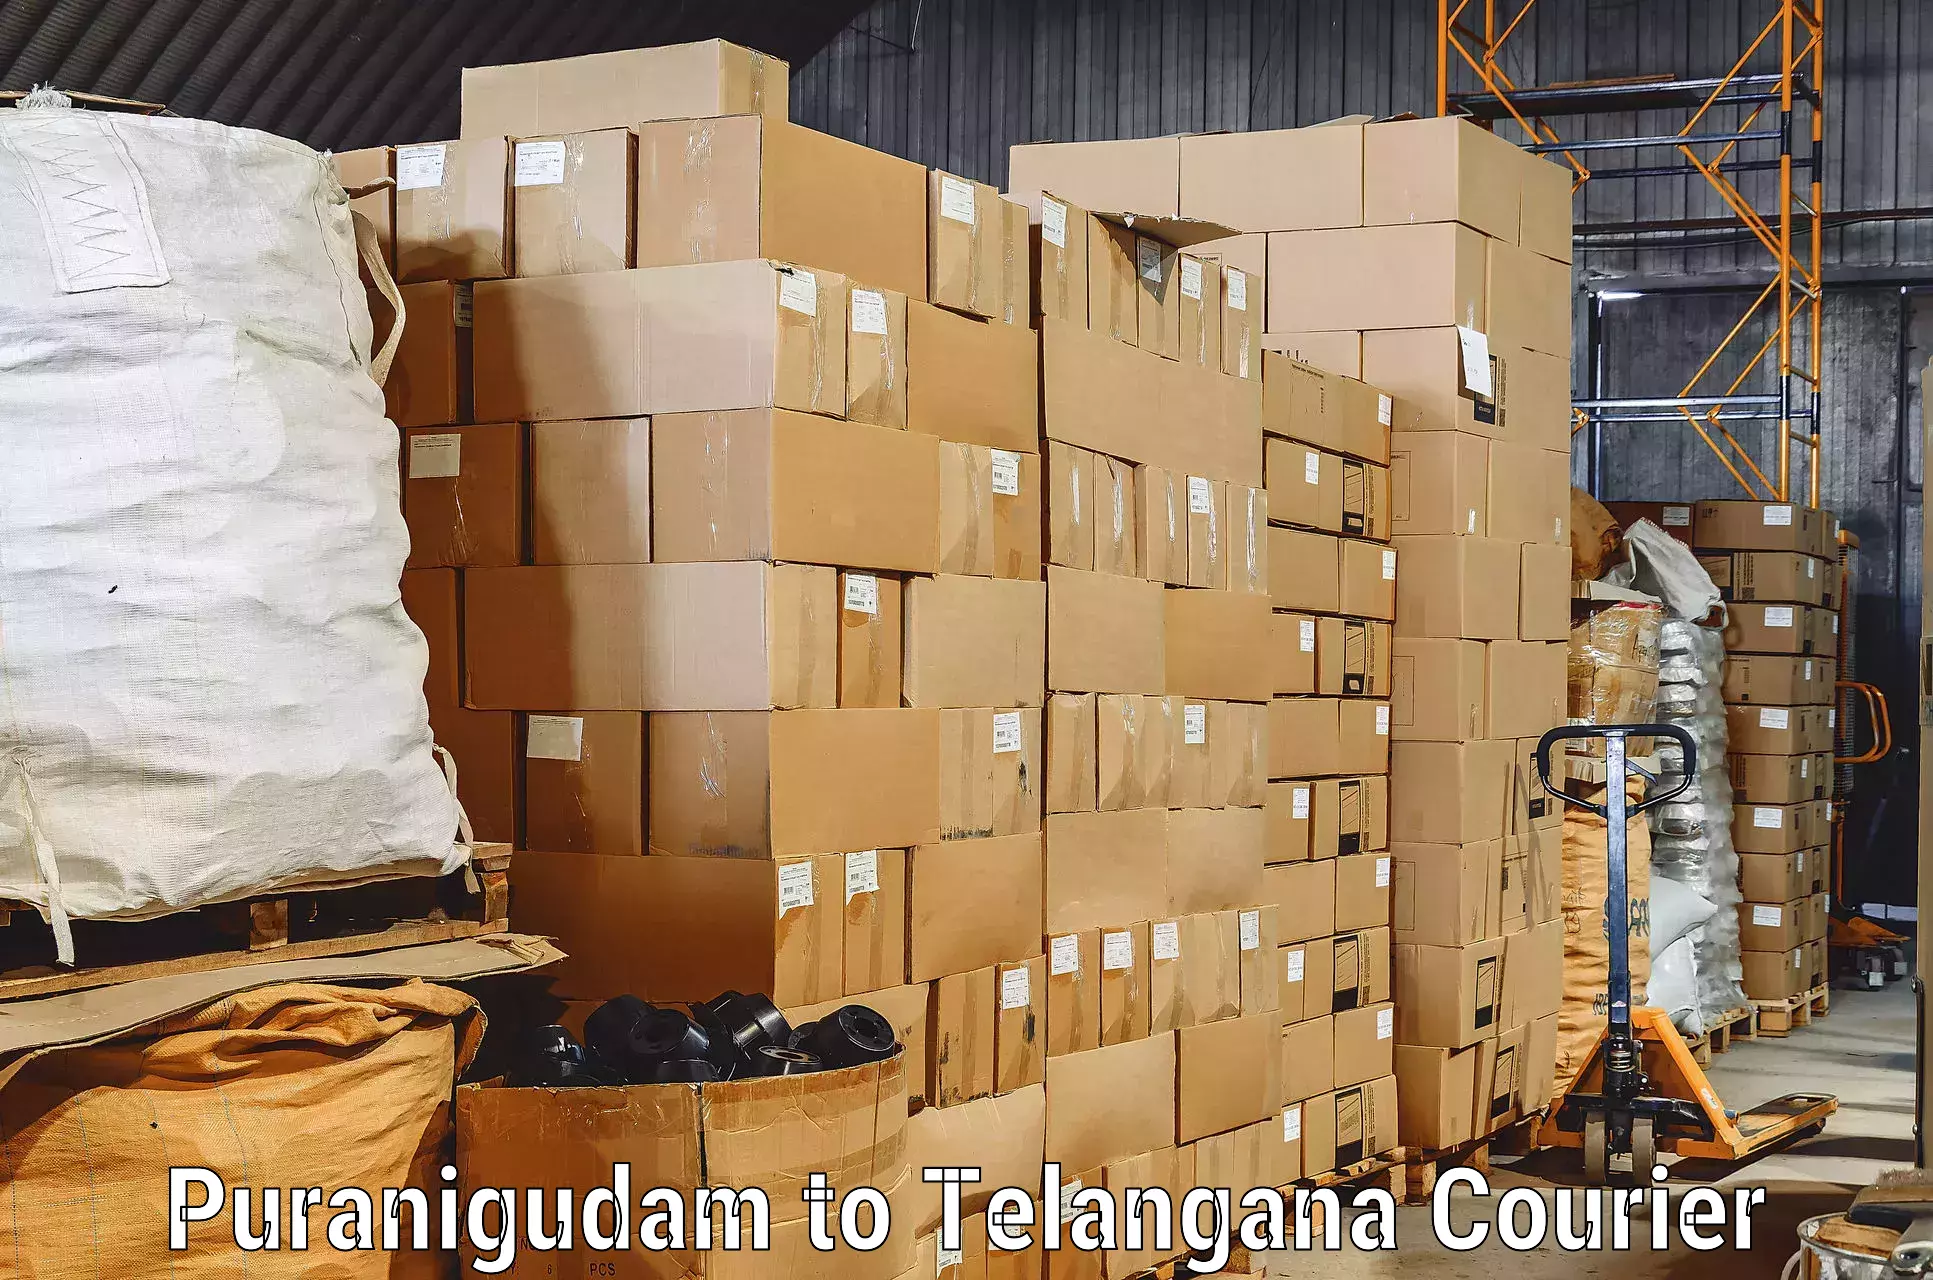 Furniture transport services Puranigudam to Shankarpalle